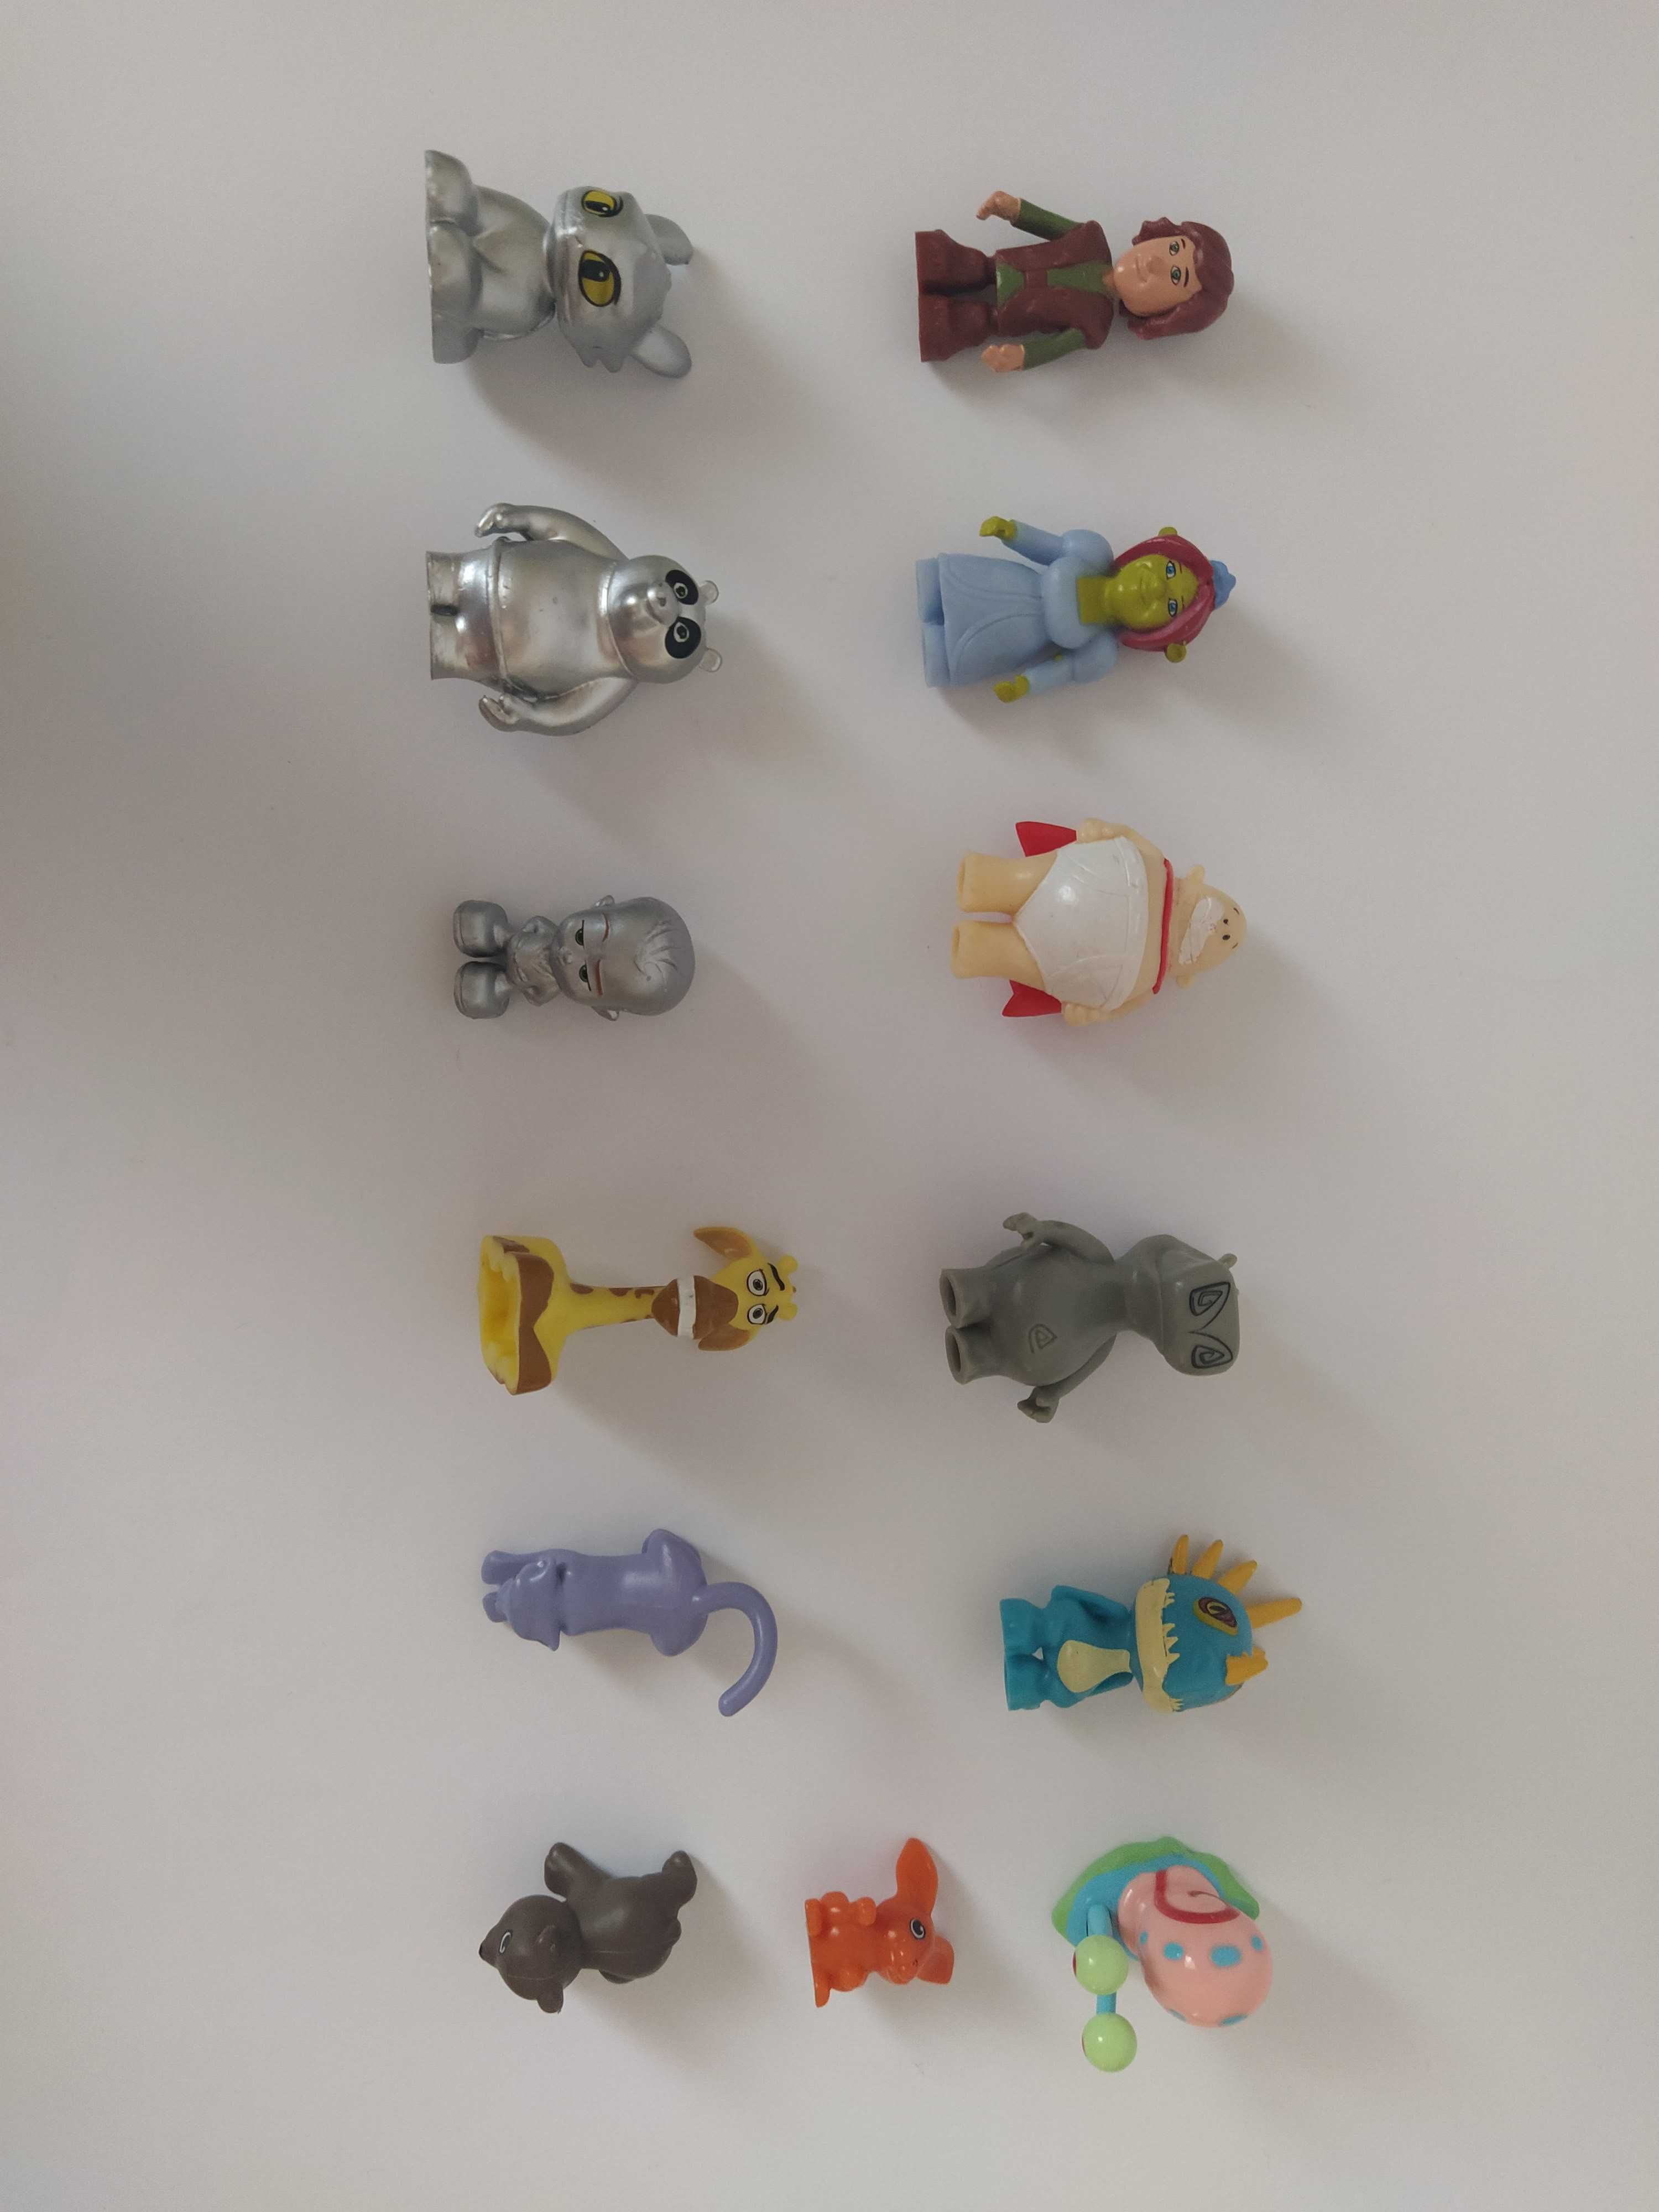 Brinquedos variados- Minions, mini figuras do Mini Preço, outros